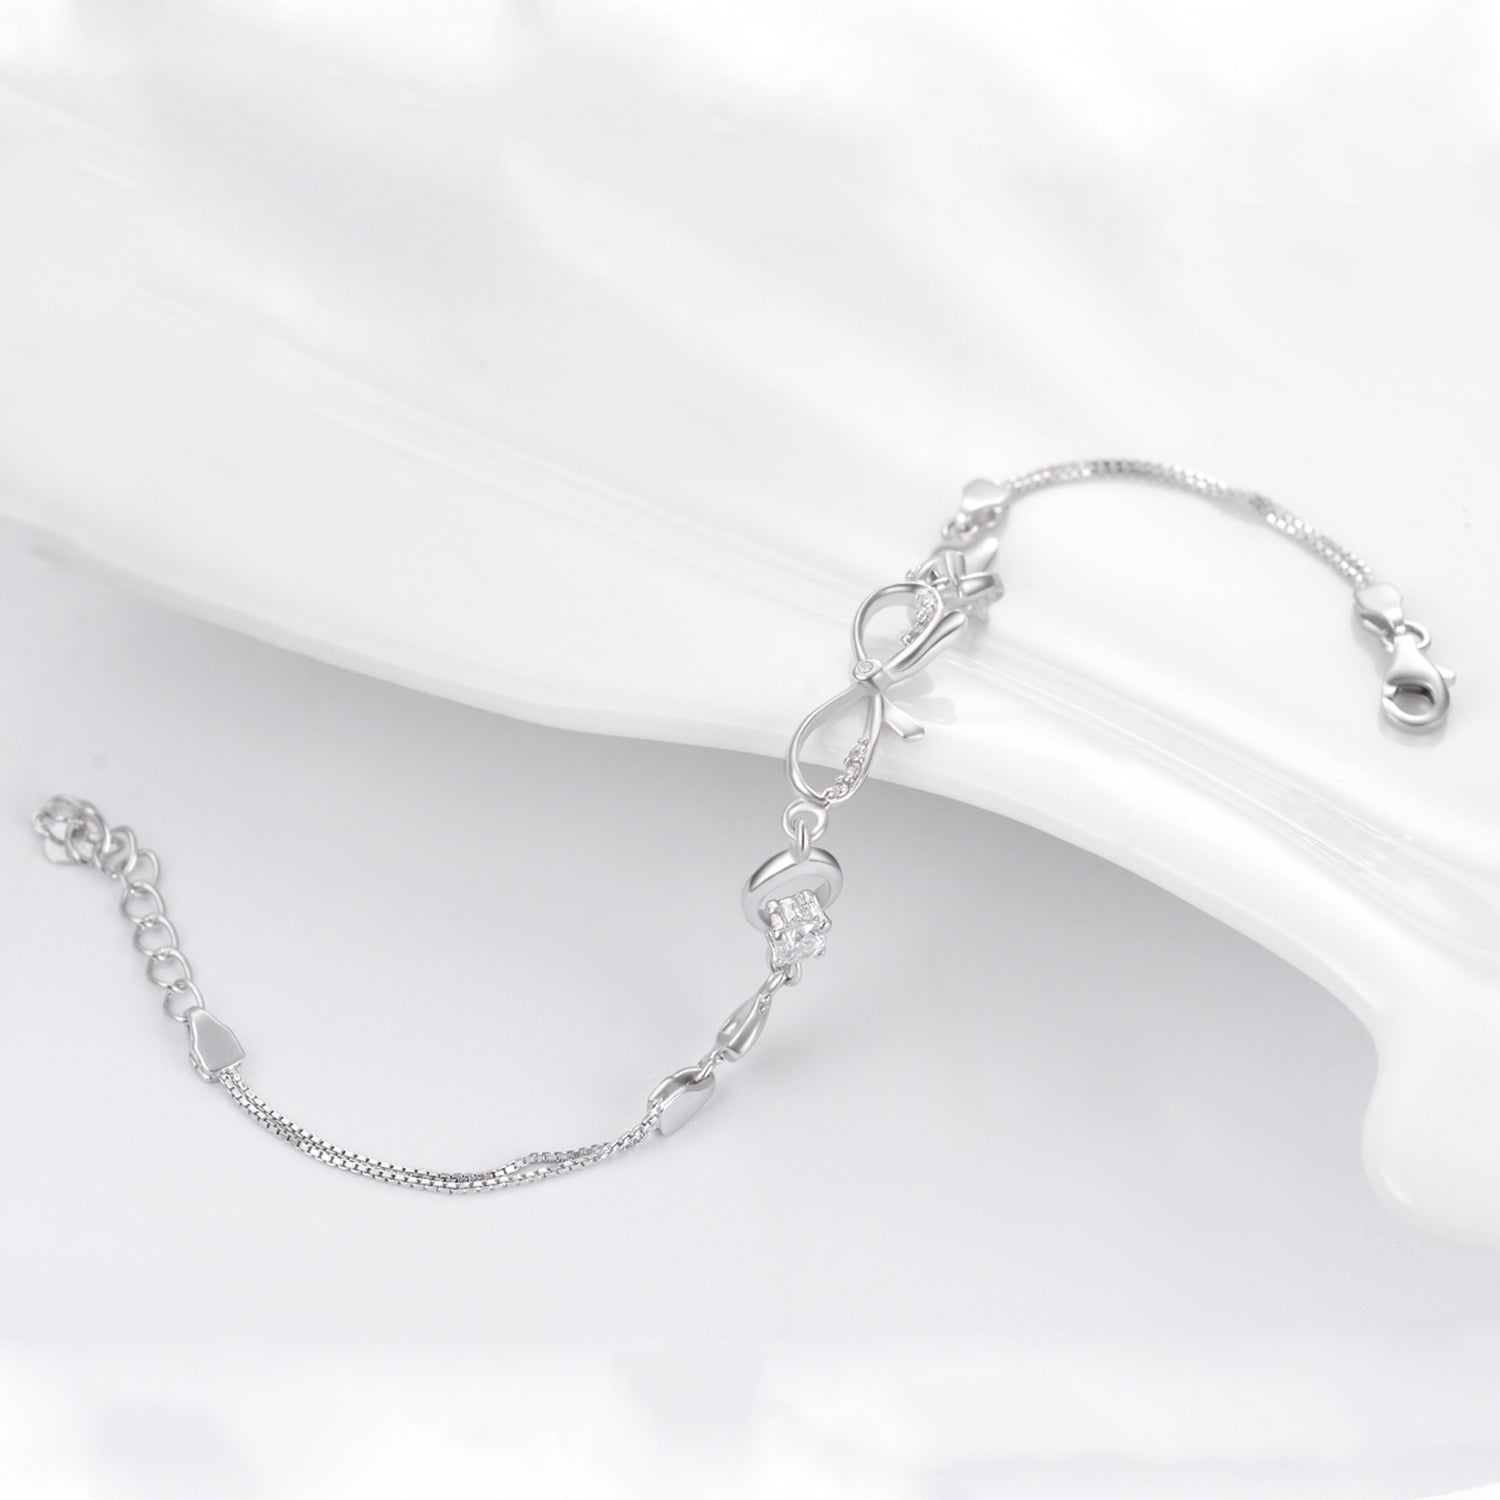 Bowknot Bracelet Adjustable Butterfly Knot Silver Bracelet Designs